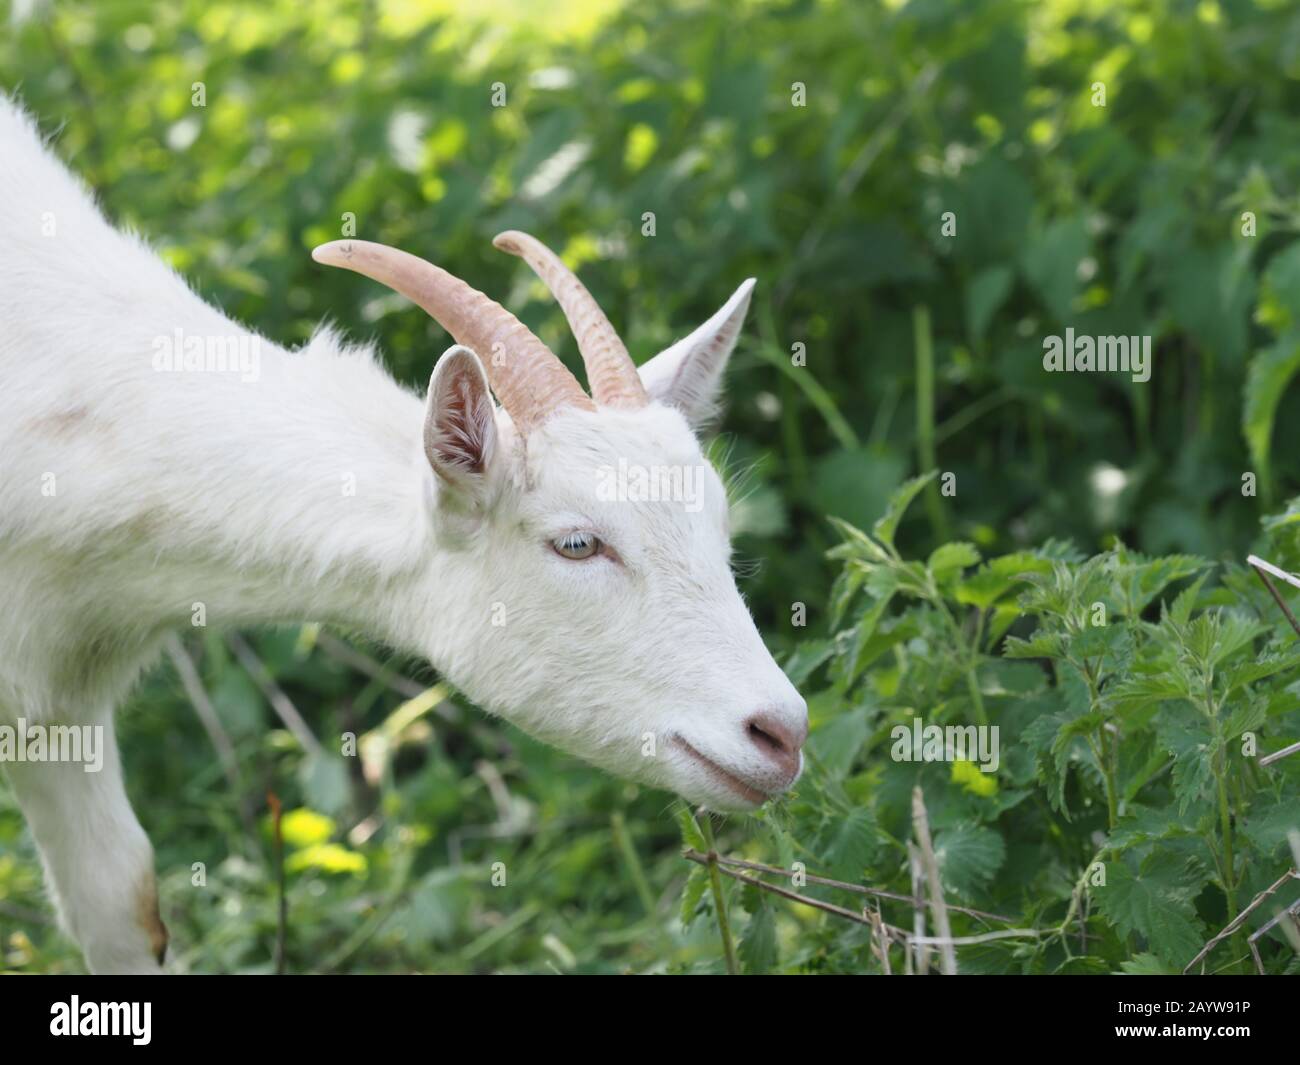 Una capra bianca carina con corna lunghe in un campo. Foto Stock